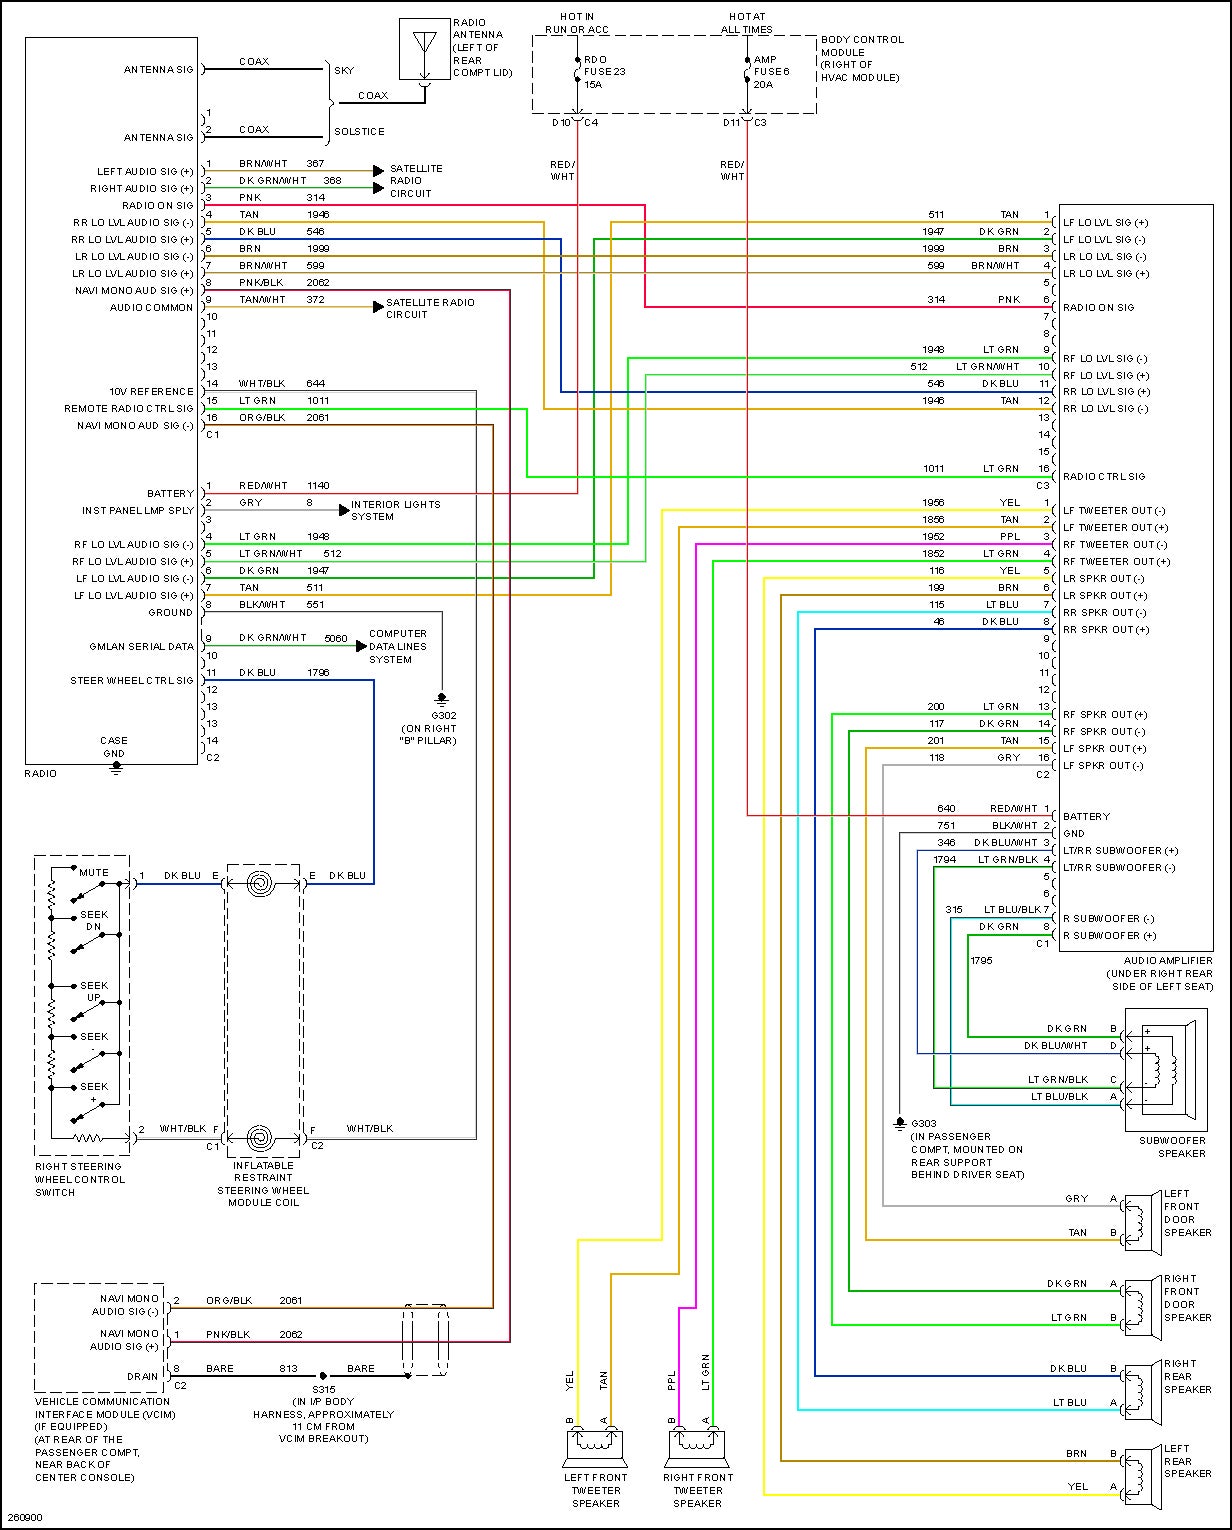 35 Scosche Gm2000 Wiring Diagram - Wiring Diagram Online Source